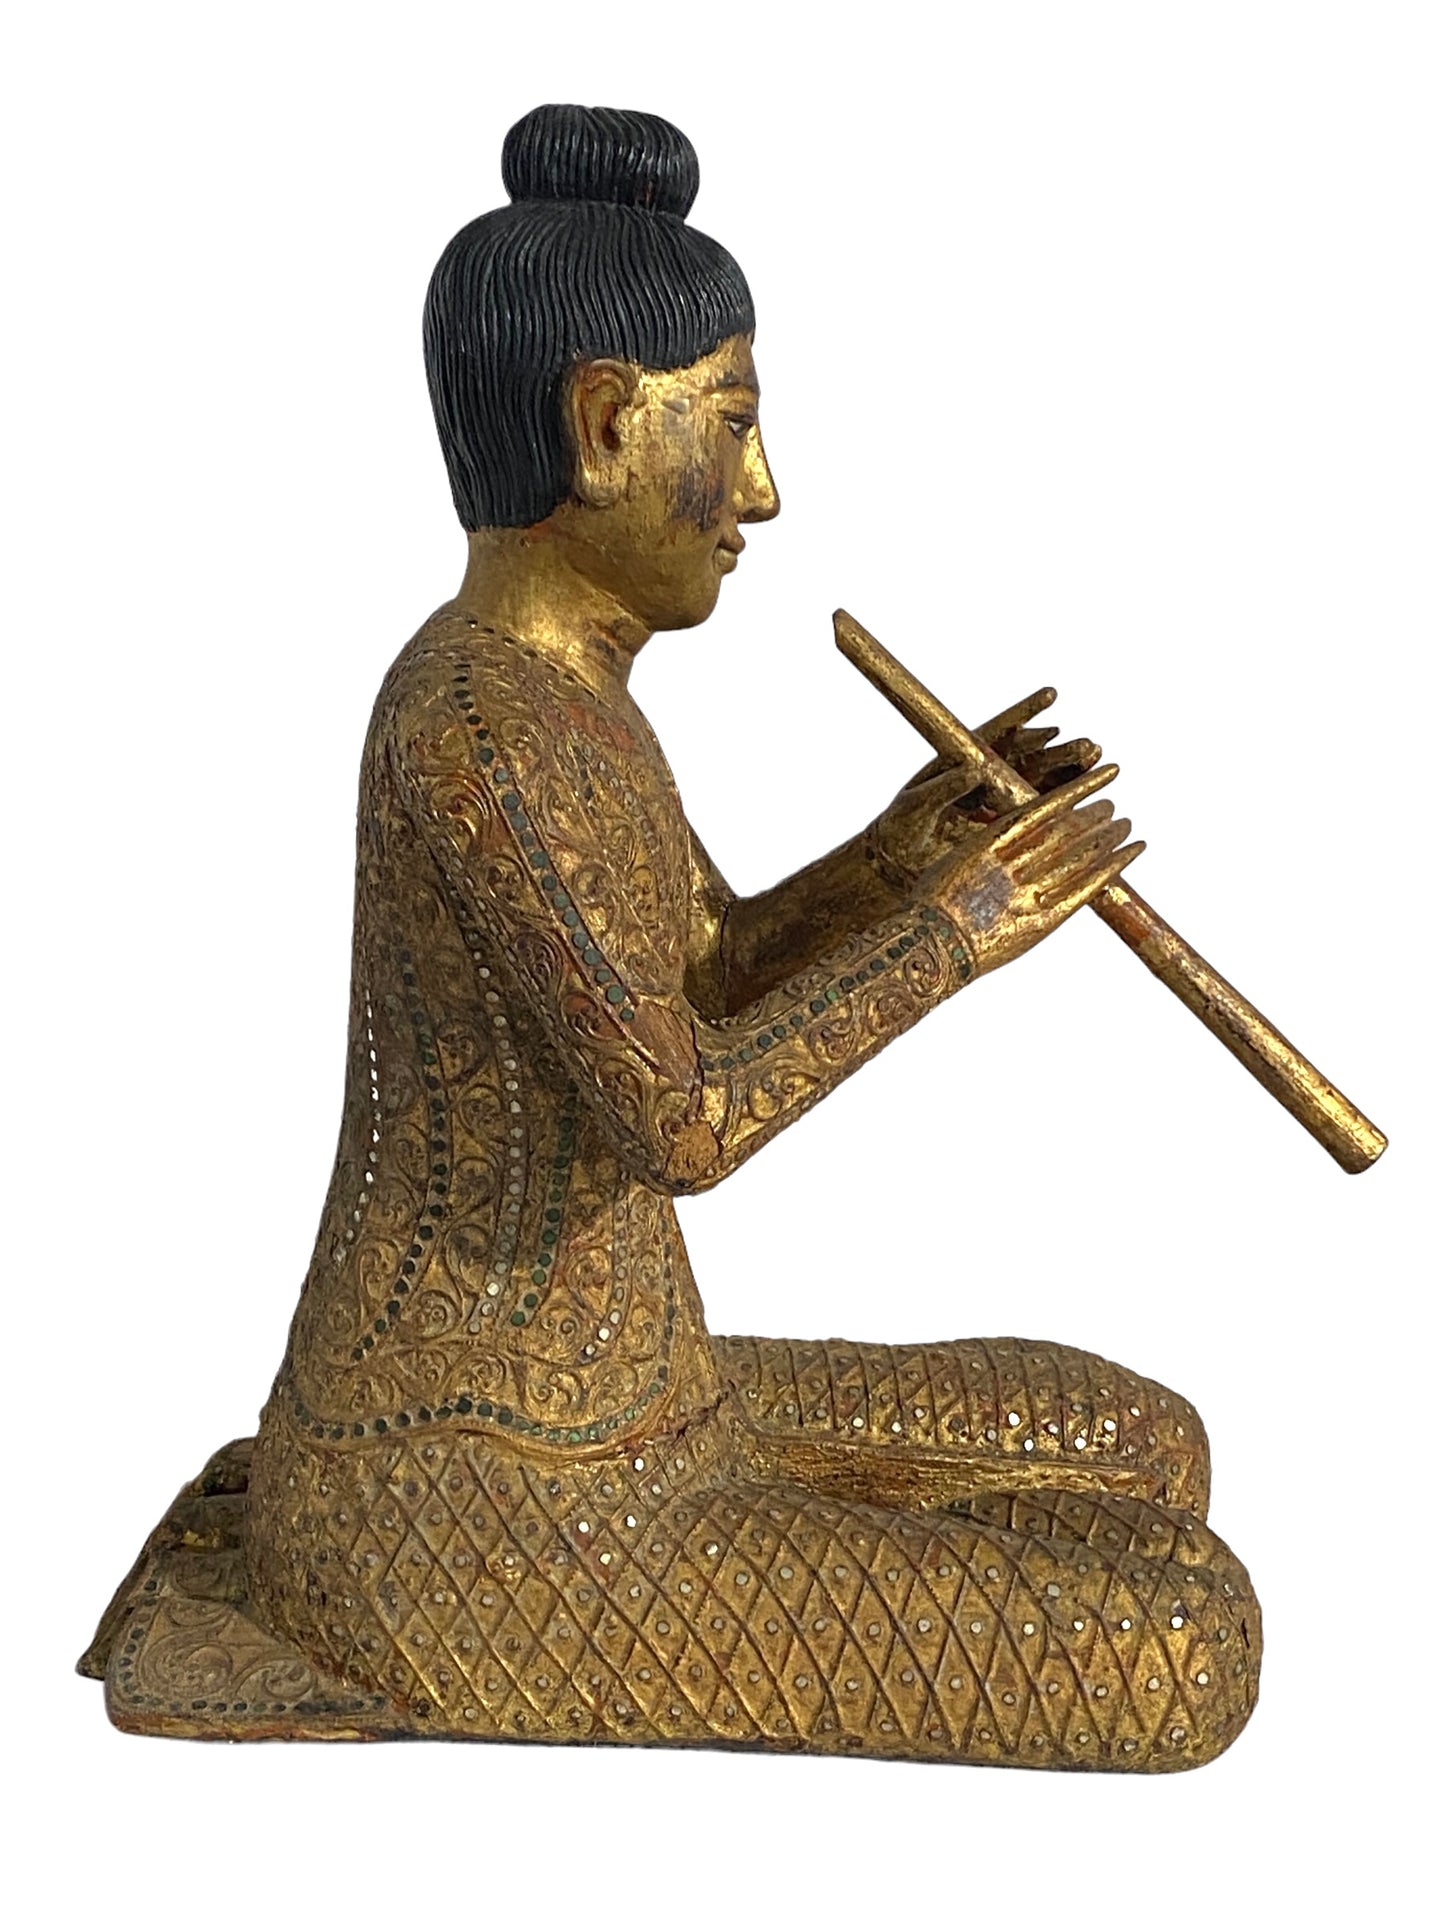 #5010 Old Circa 1900 Temple Thai Siamese Musician Male Figure 20" H